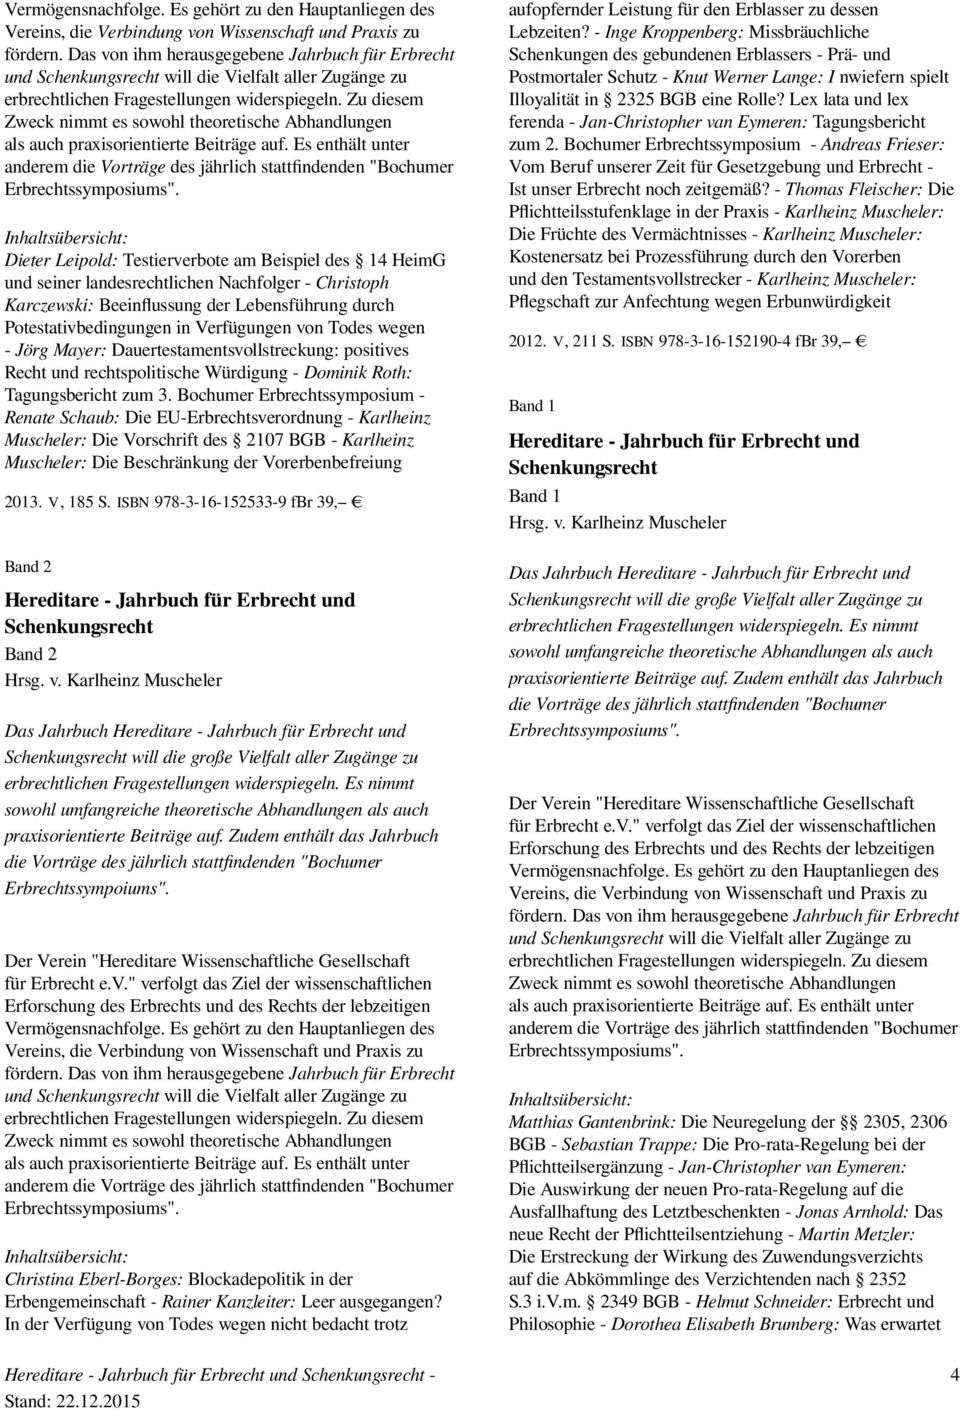 Bochumer Erbrechtssymposium - Renate Schaub: Die EU-Erbrechtsverordnung - Karlheinz Muscheler: Die Vorschrift des 2107 BGB - Karlheinz Muscheler: Die Beschränkung der Vorerbenbefreiung 2013. V, 185 S.